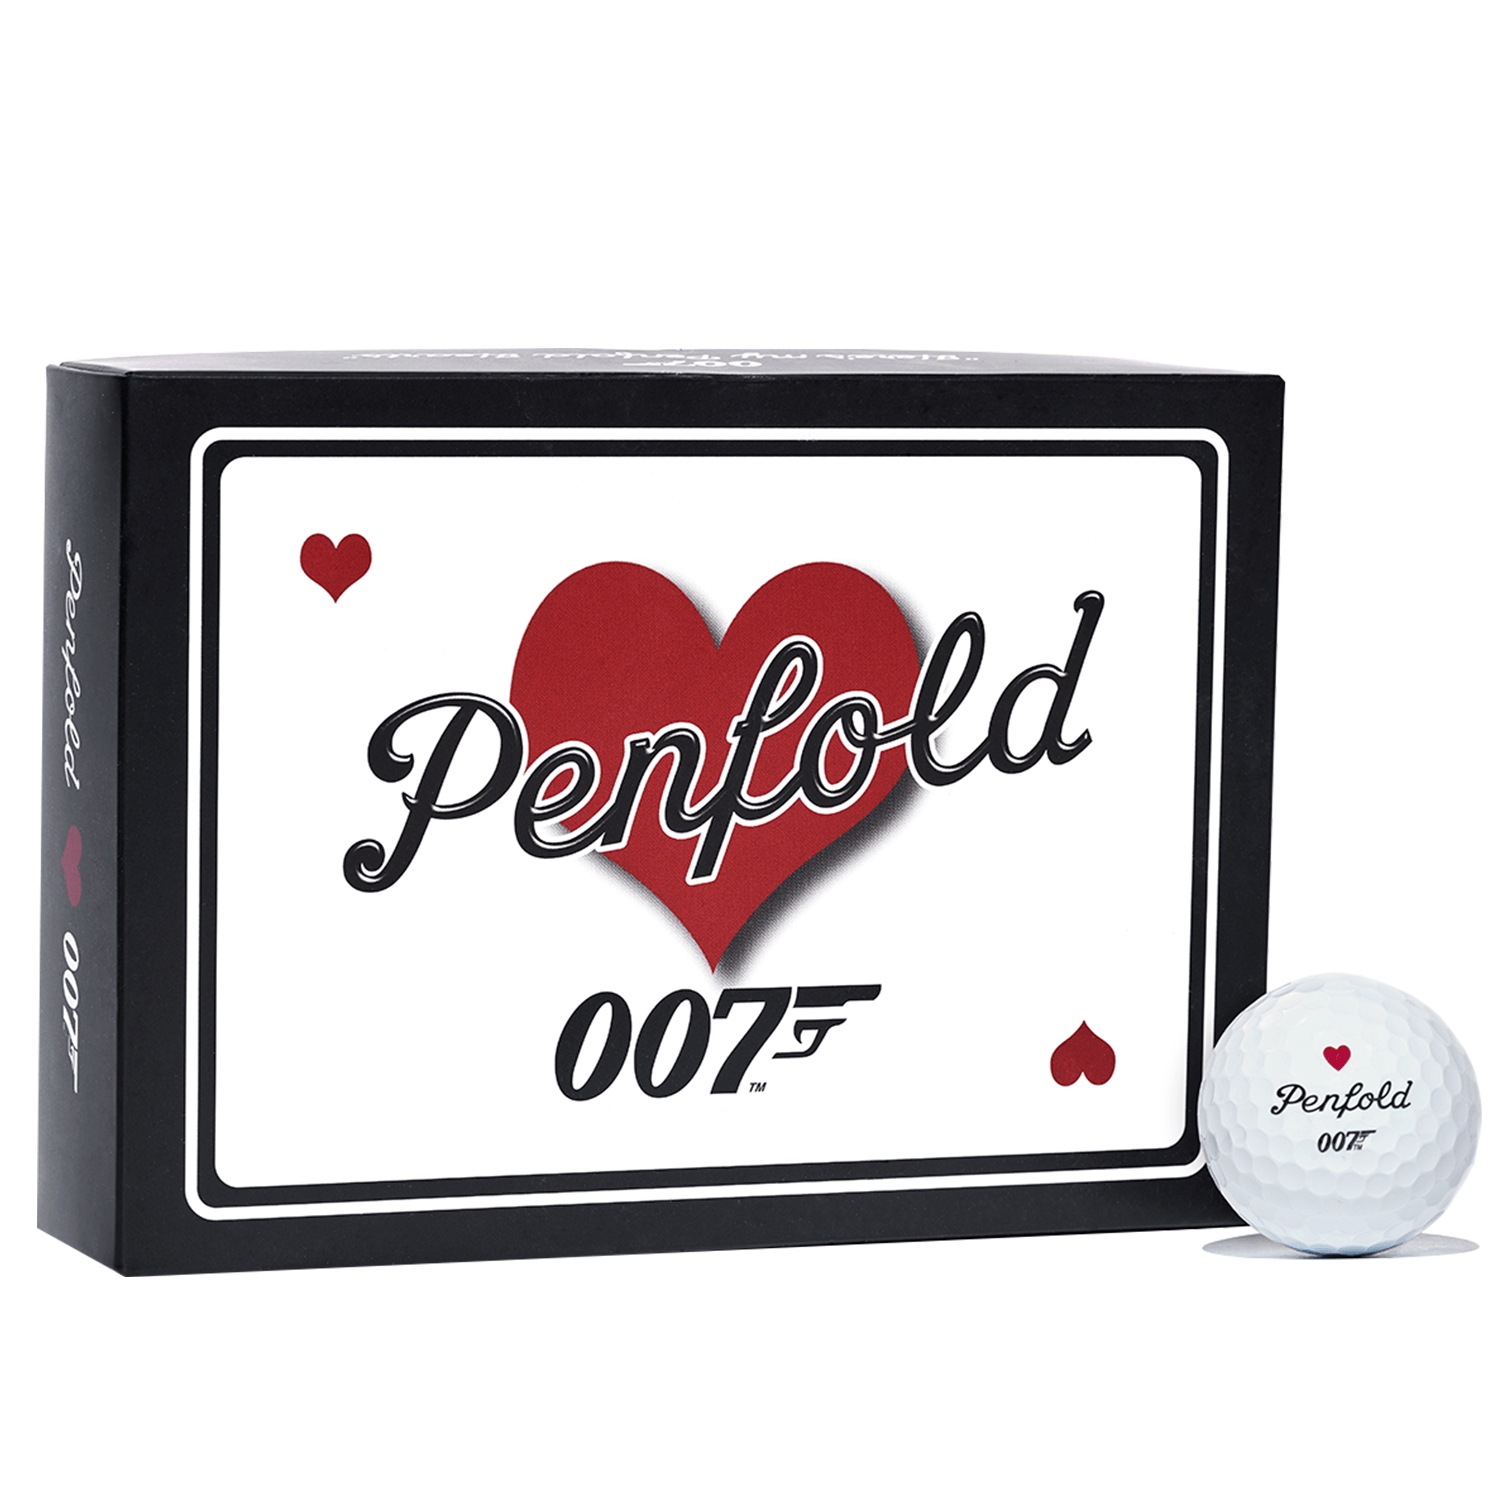 James Bond 007 x Penfold Heart Golf Balls - Set of 12 GOLF ACCESSORIES PENFOLD 